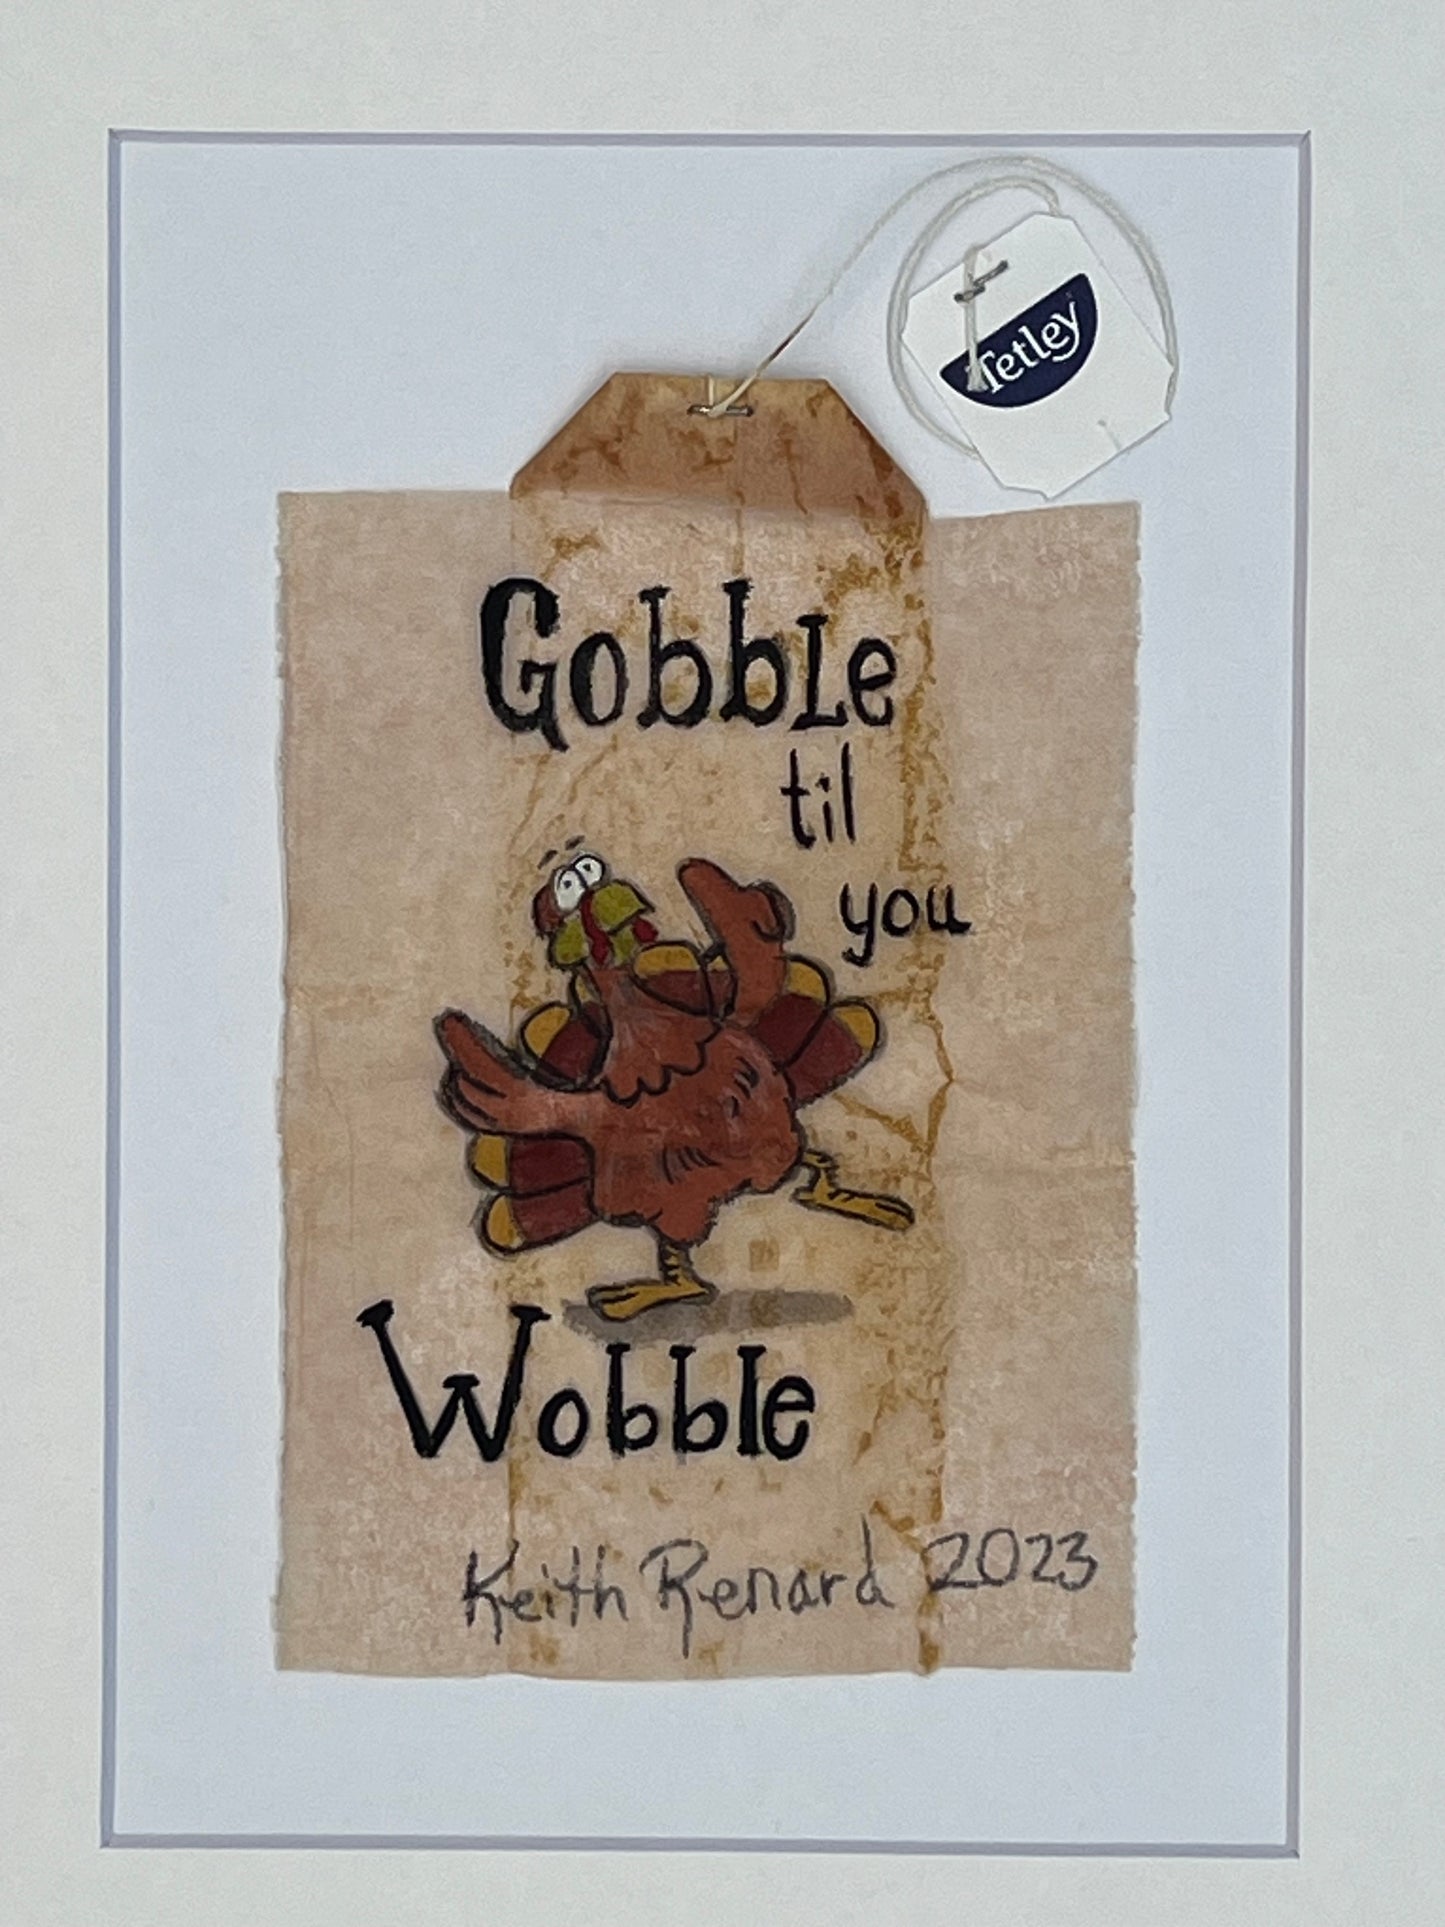 Gooble til you Wooble